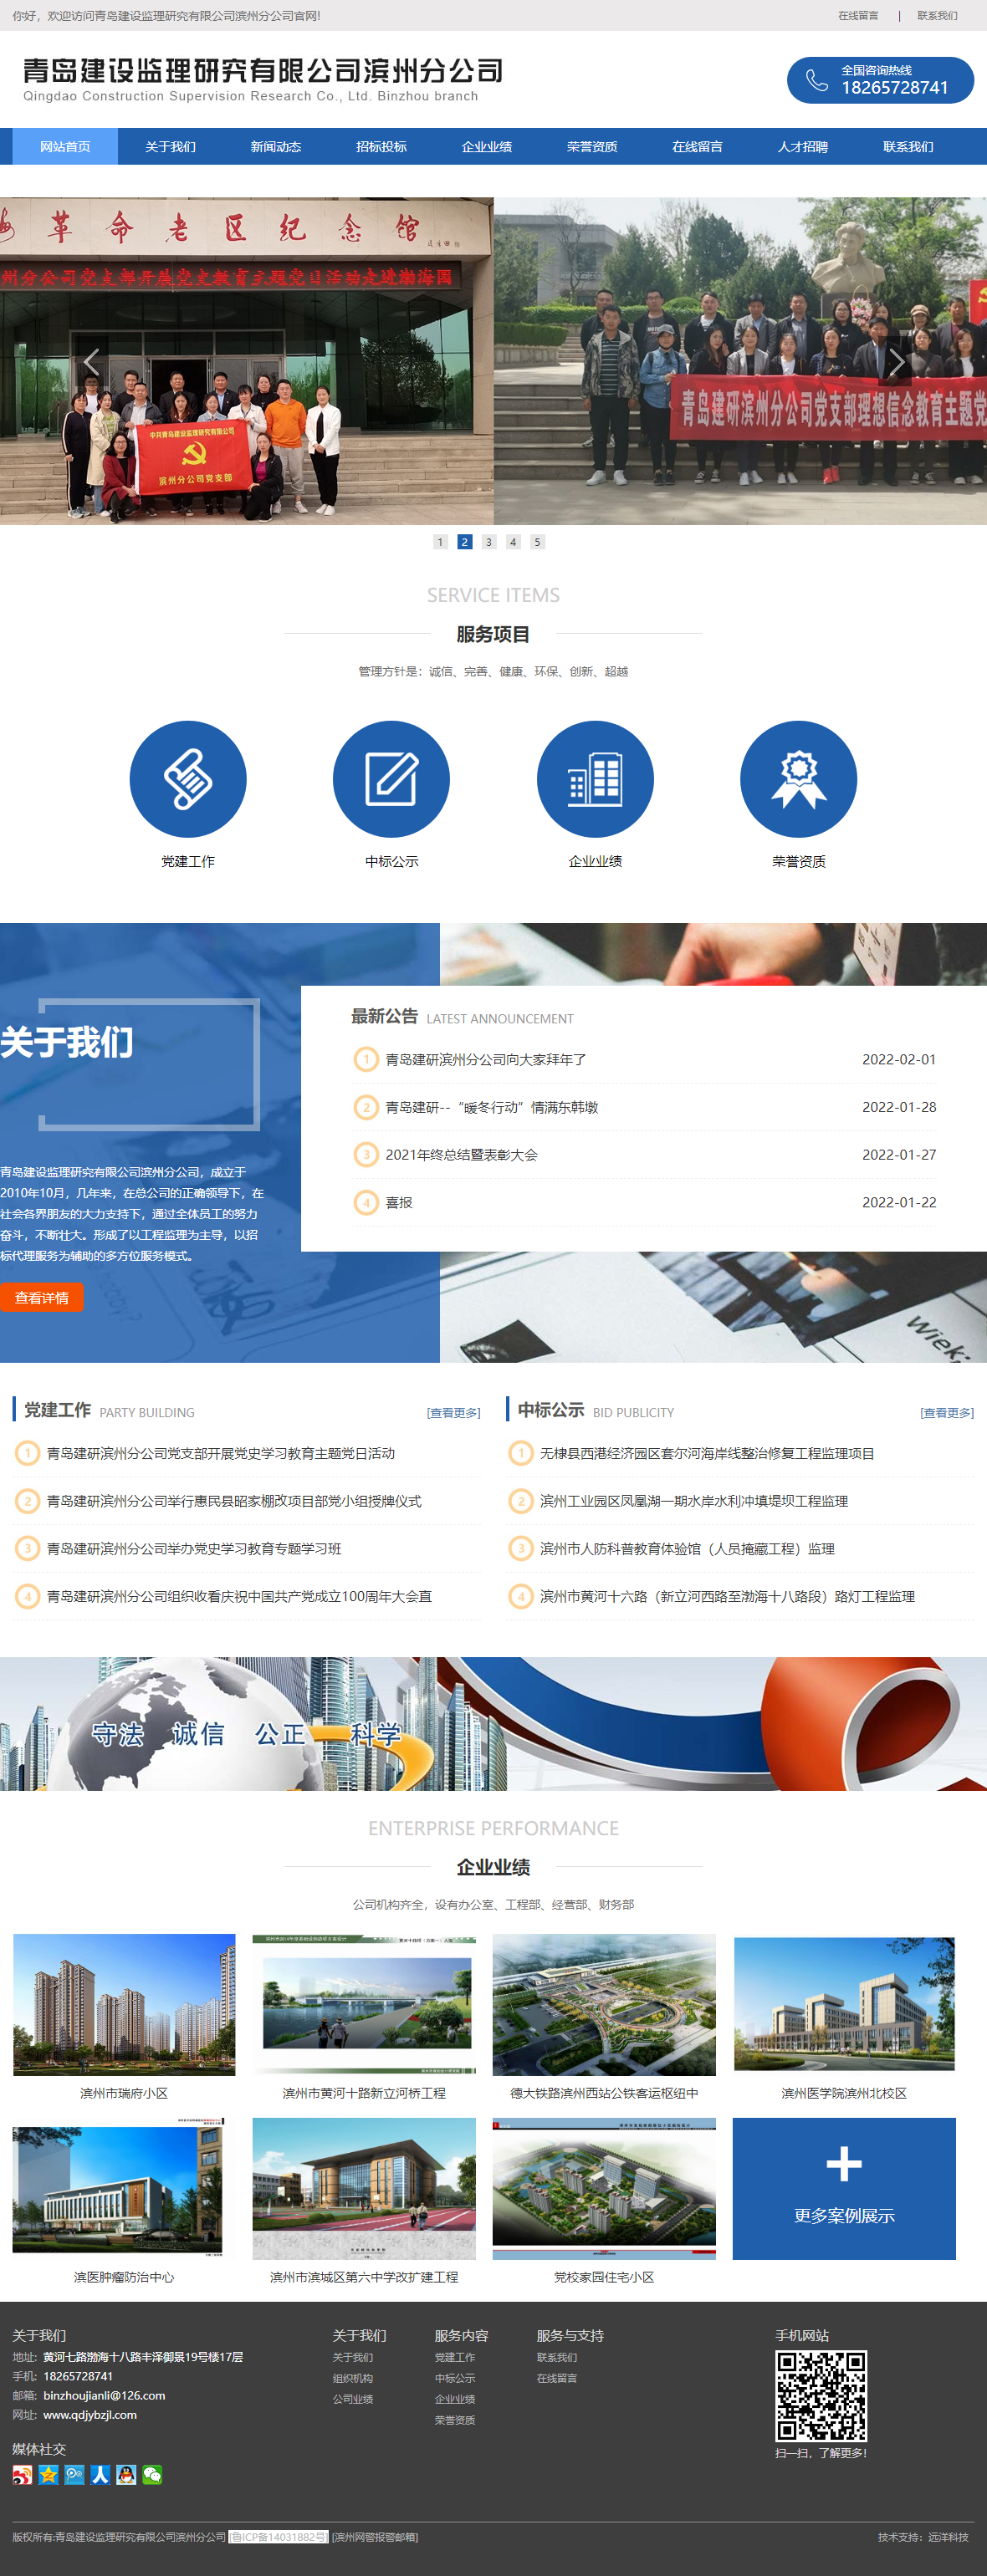 青岛建设监理研究有限公司滨州分公司网站案例